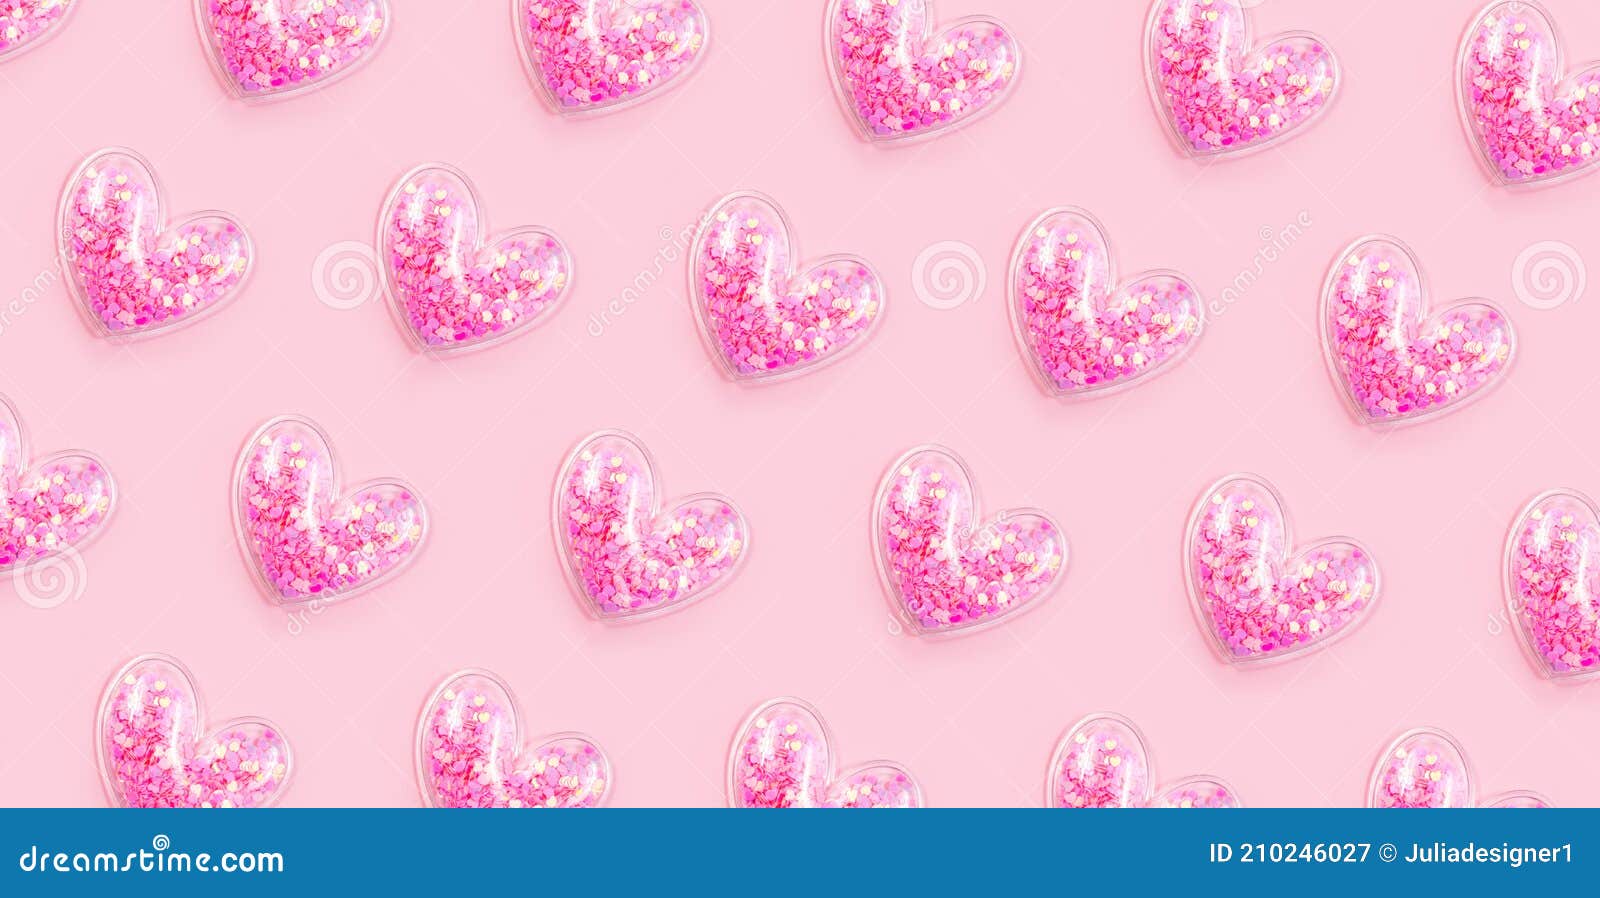 Sparkling hearts wallpaper by Kirakiradolls on DeviantArt